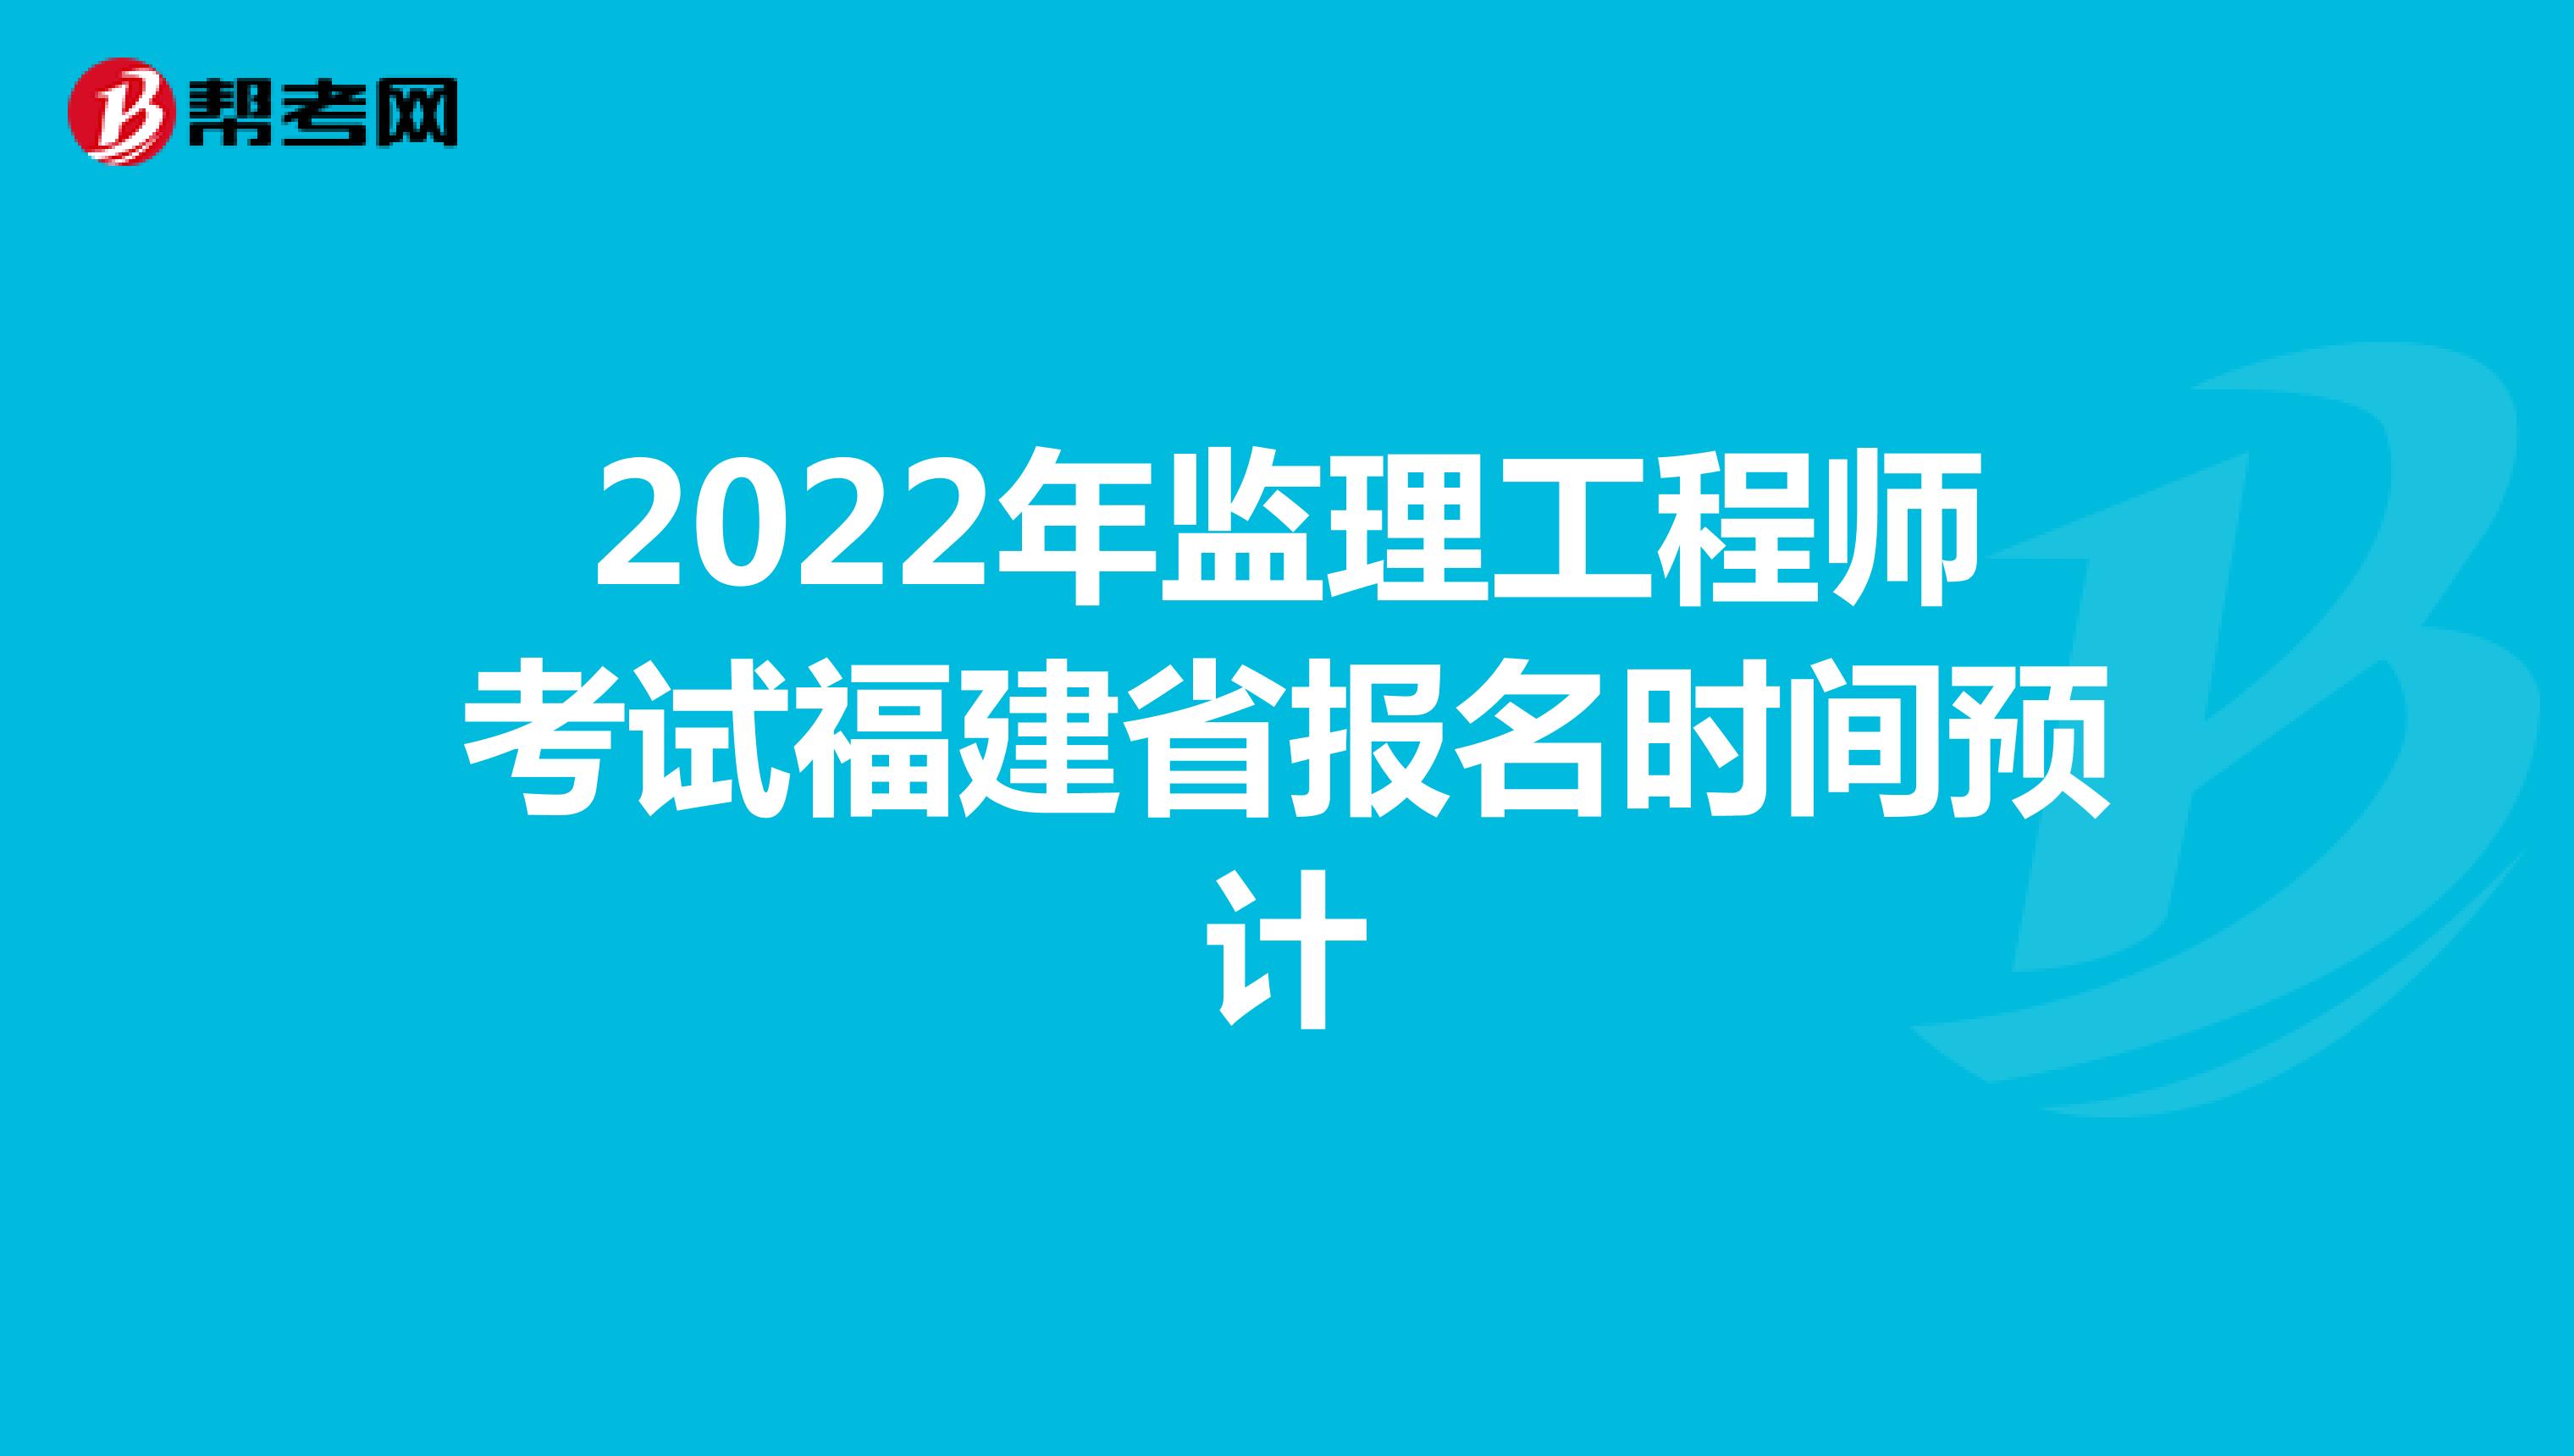 2022年监理工程师考试福建省报名时间预计